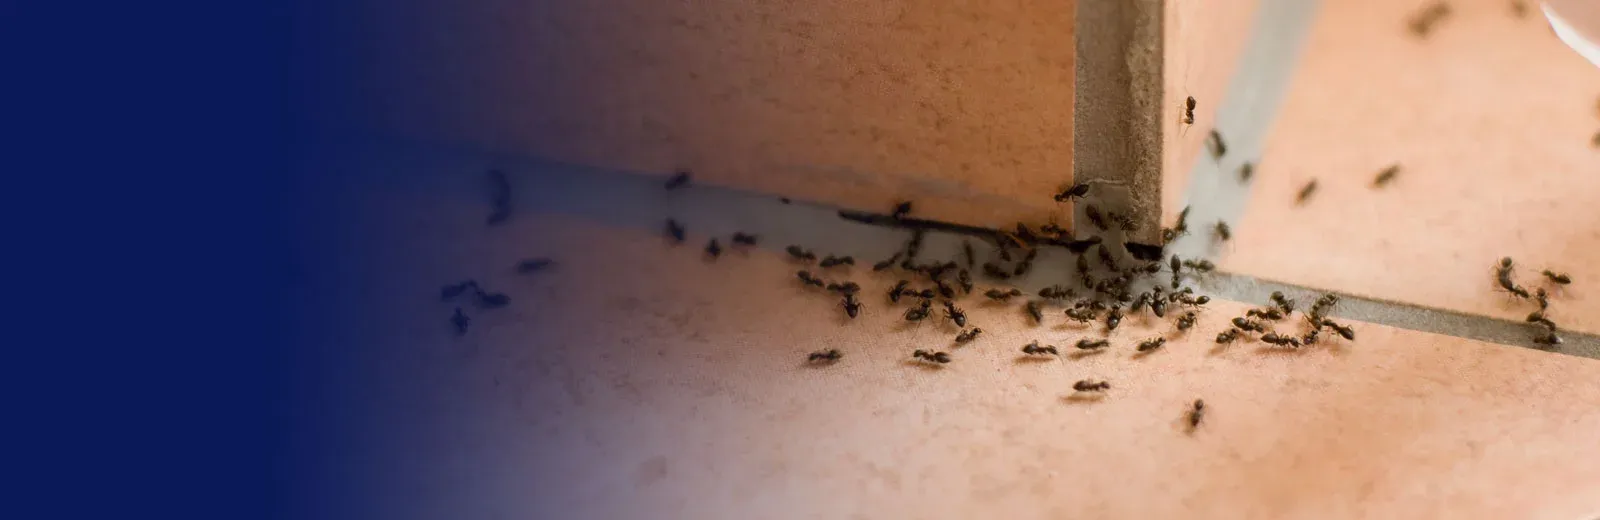 ants on a tile floor